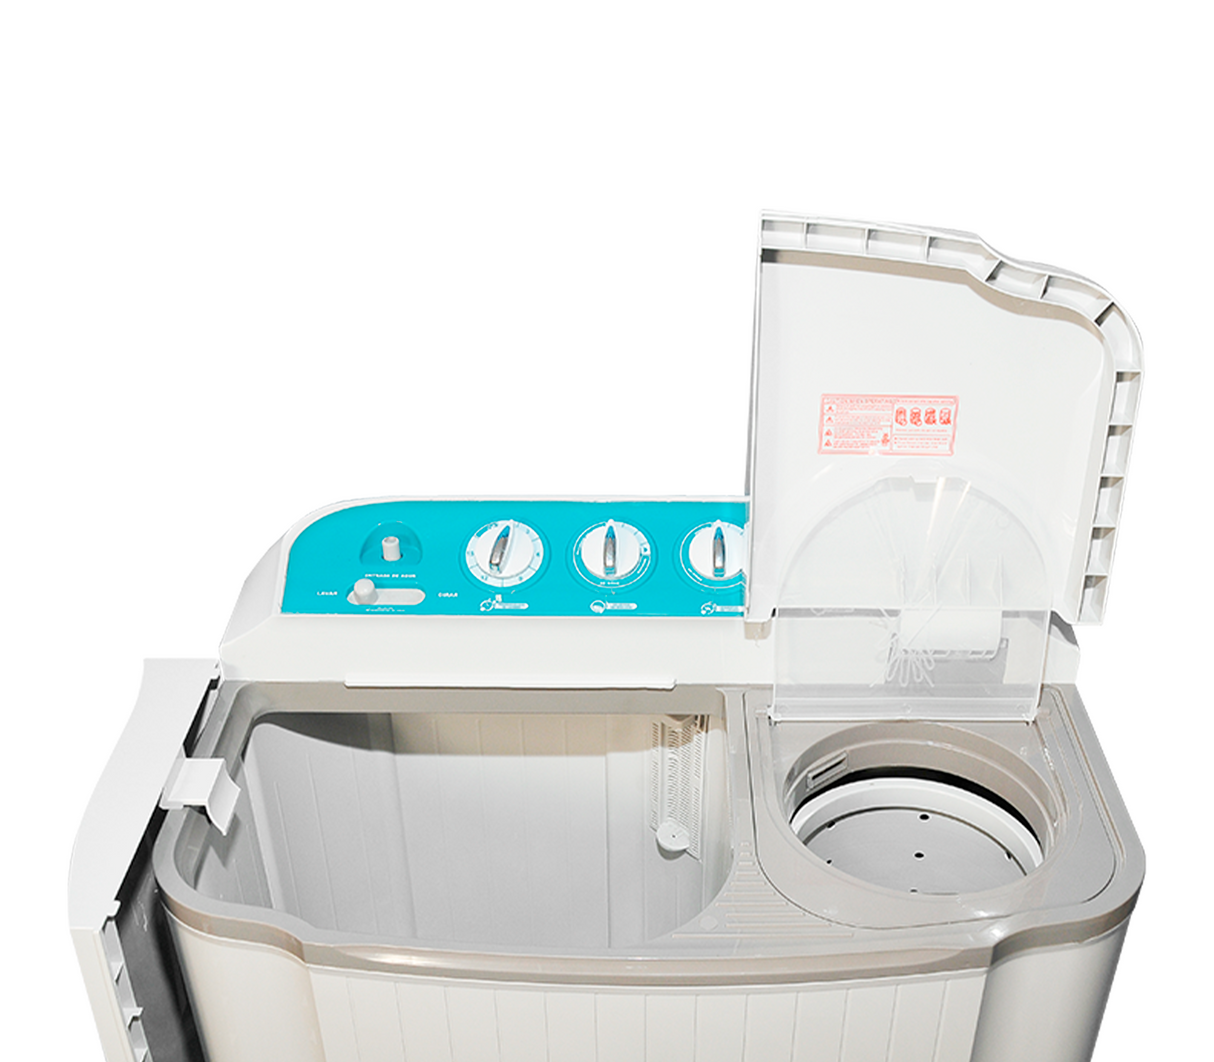  VCJ Lavadora portátil, lavadora de doble tina